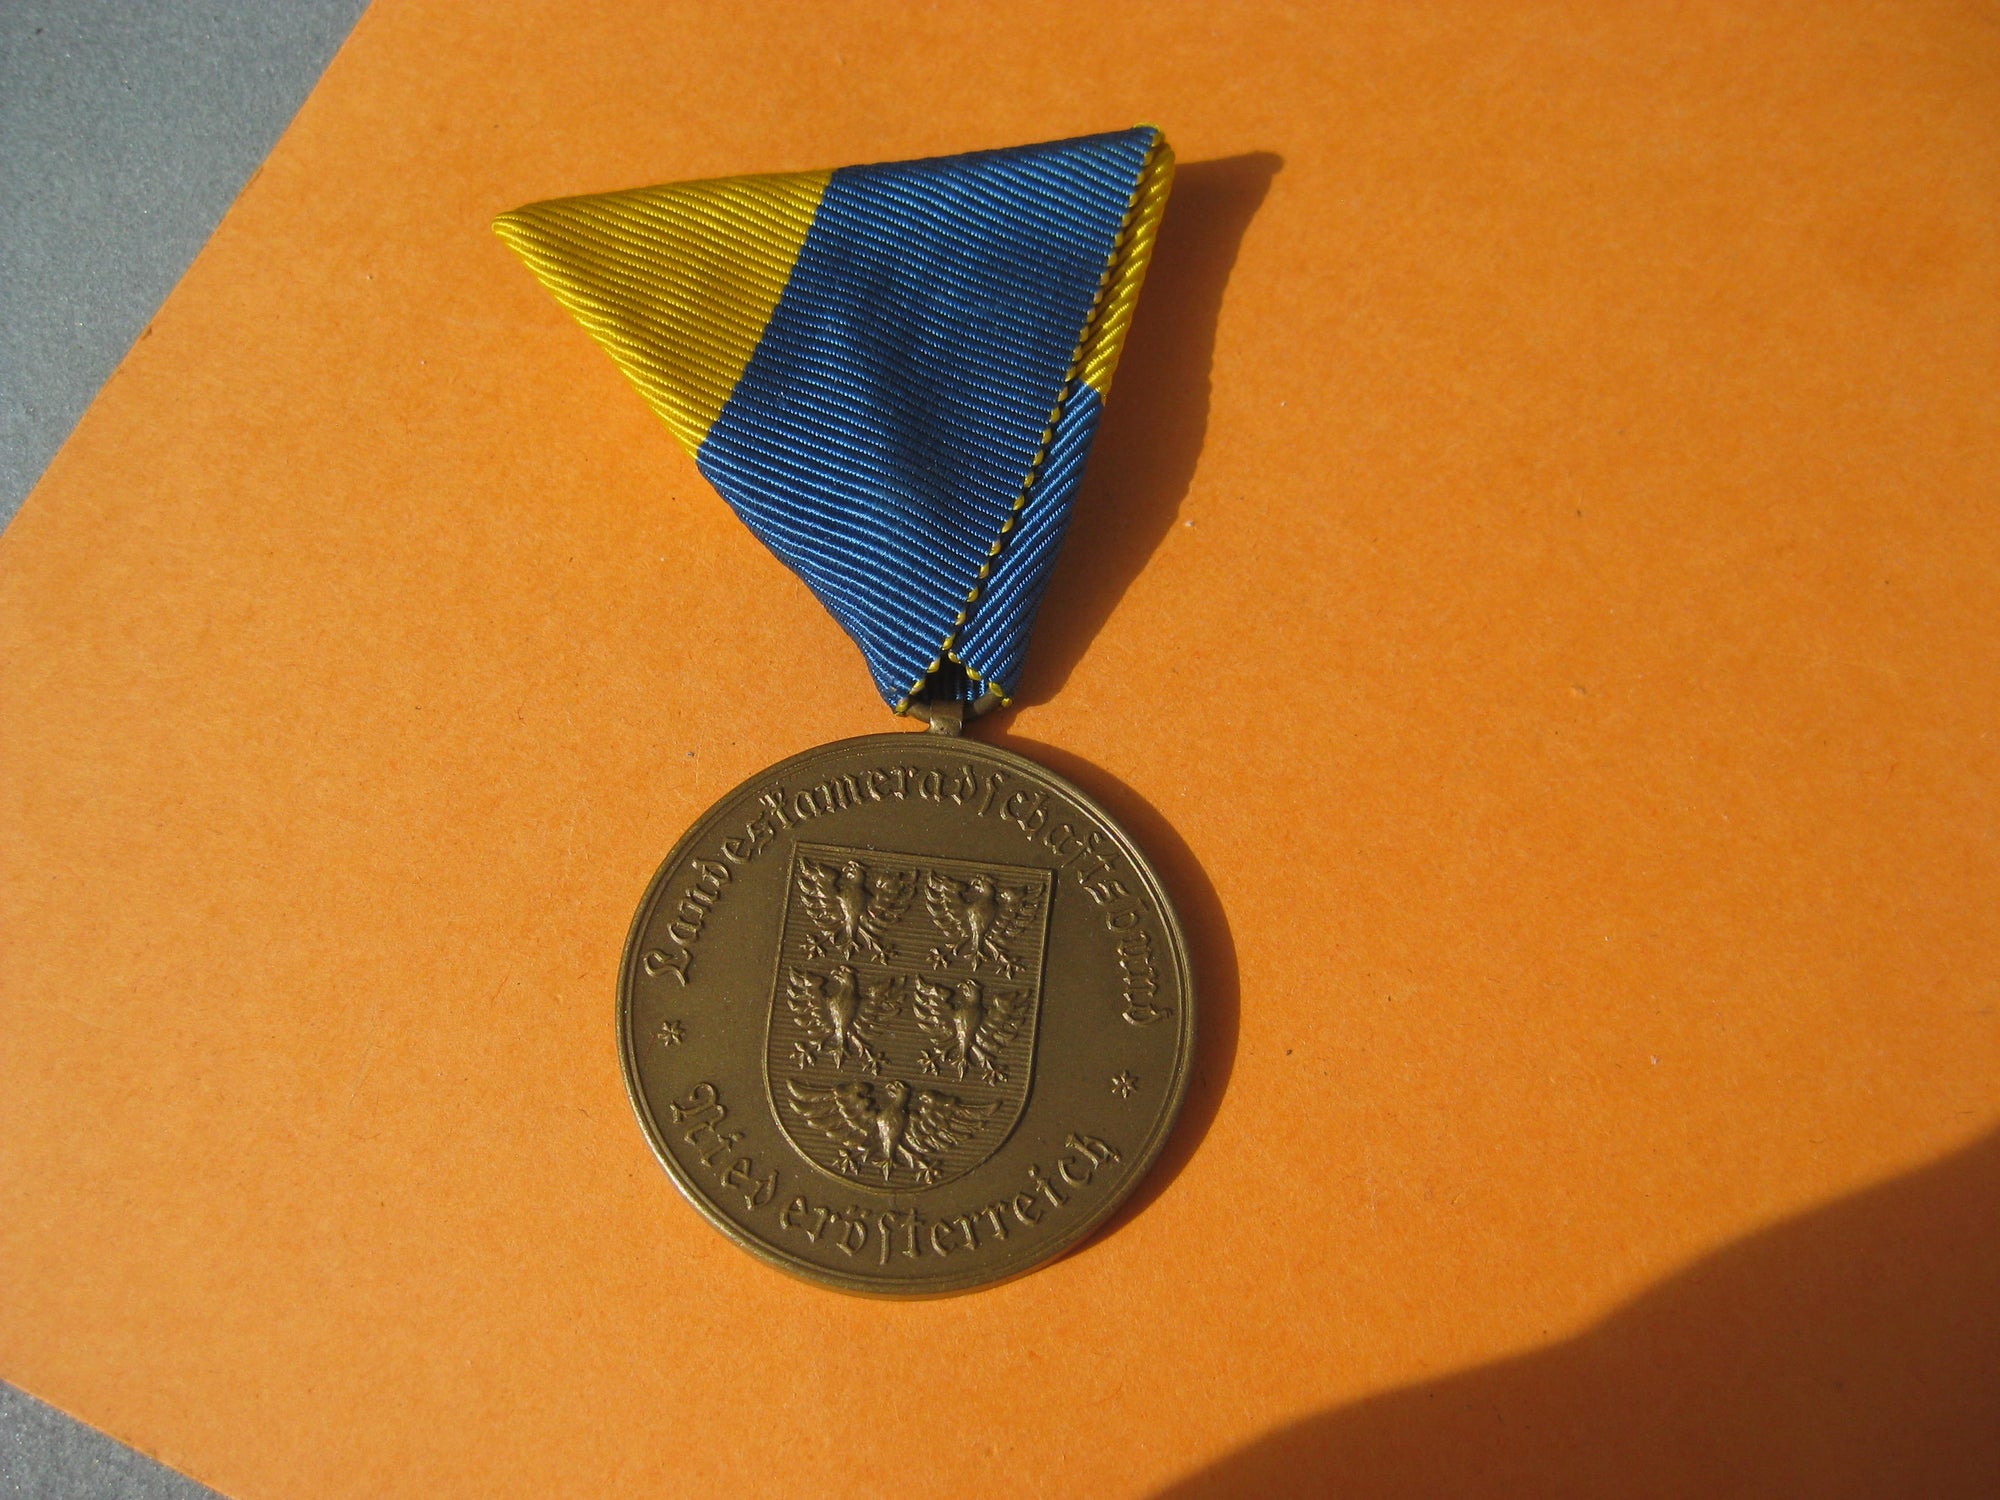 Medaille Landeskameradschaftsbund Niederösterreich für 25 Jahre